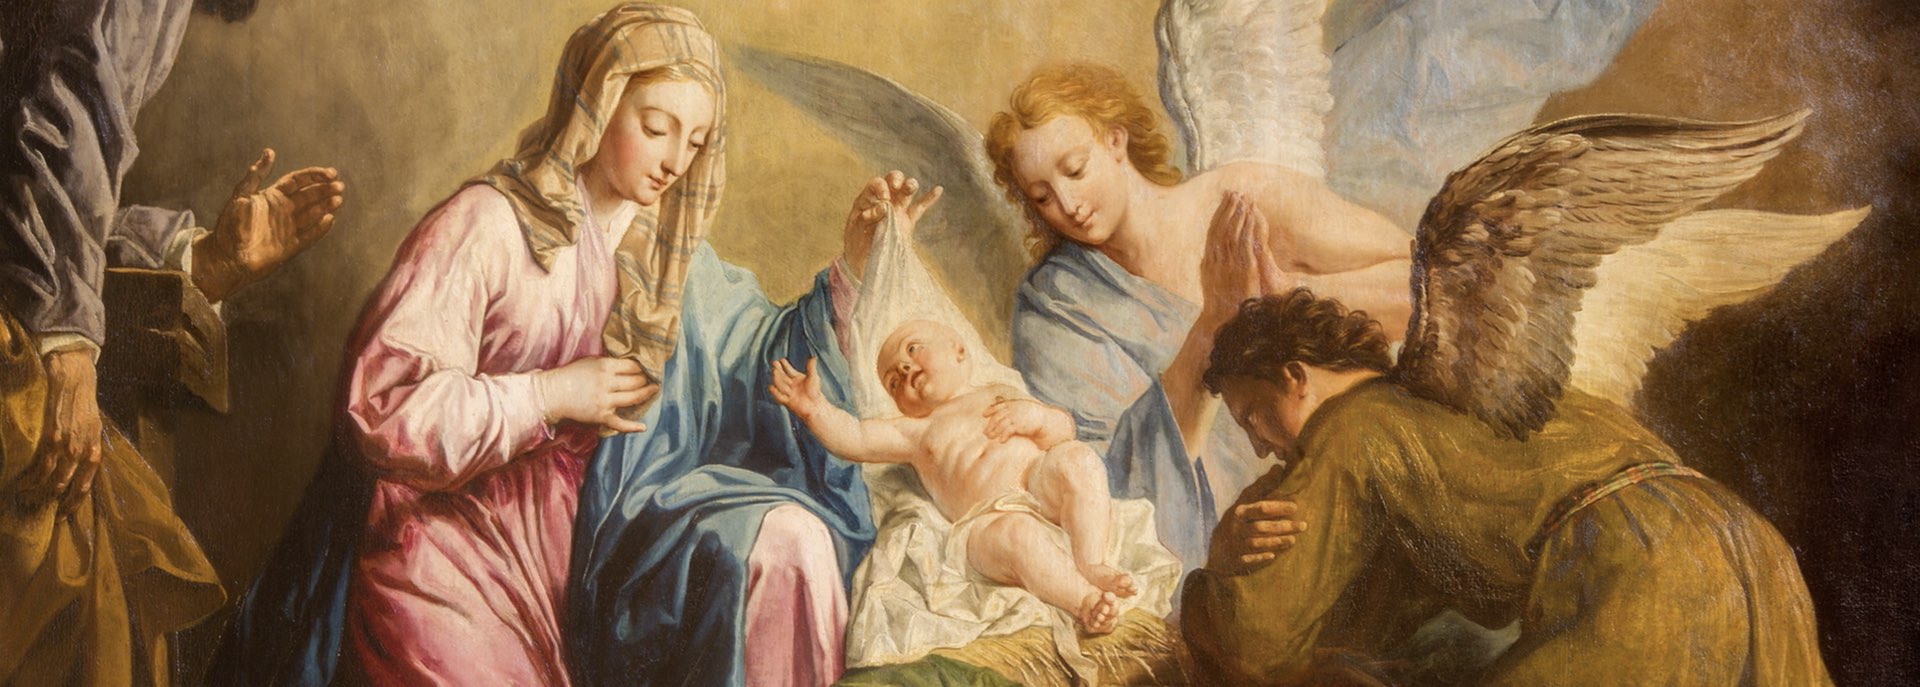 Santo Natale, l'arrivo del Bambin Gesù: l’augurio del Superiore Generale